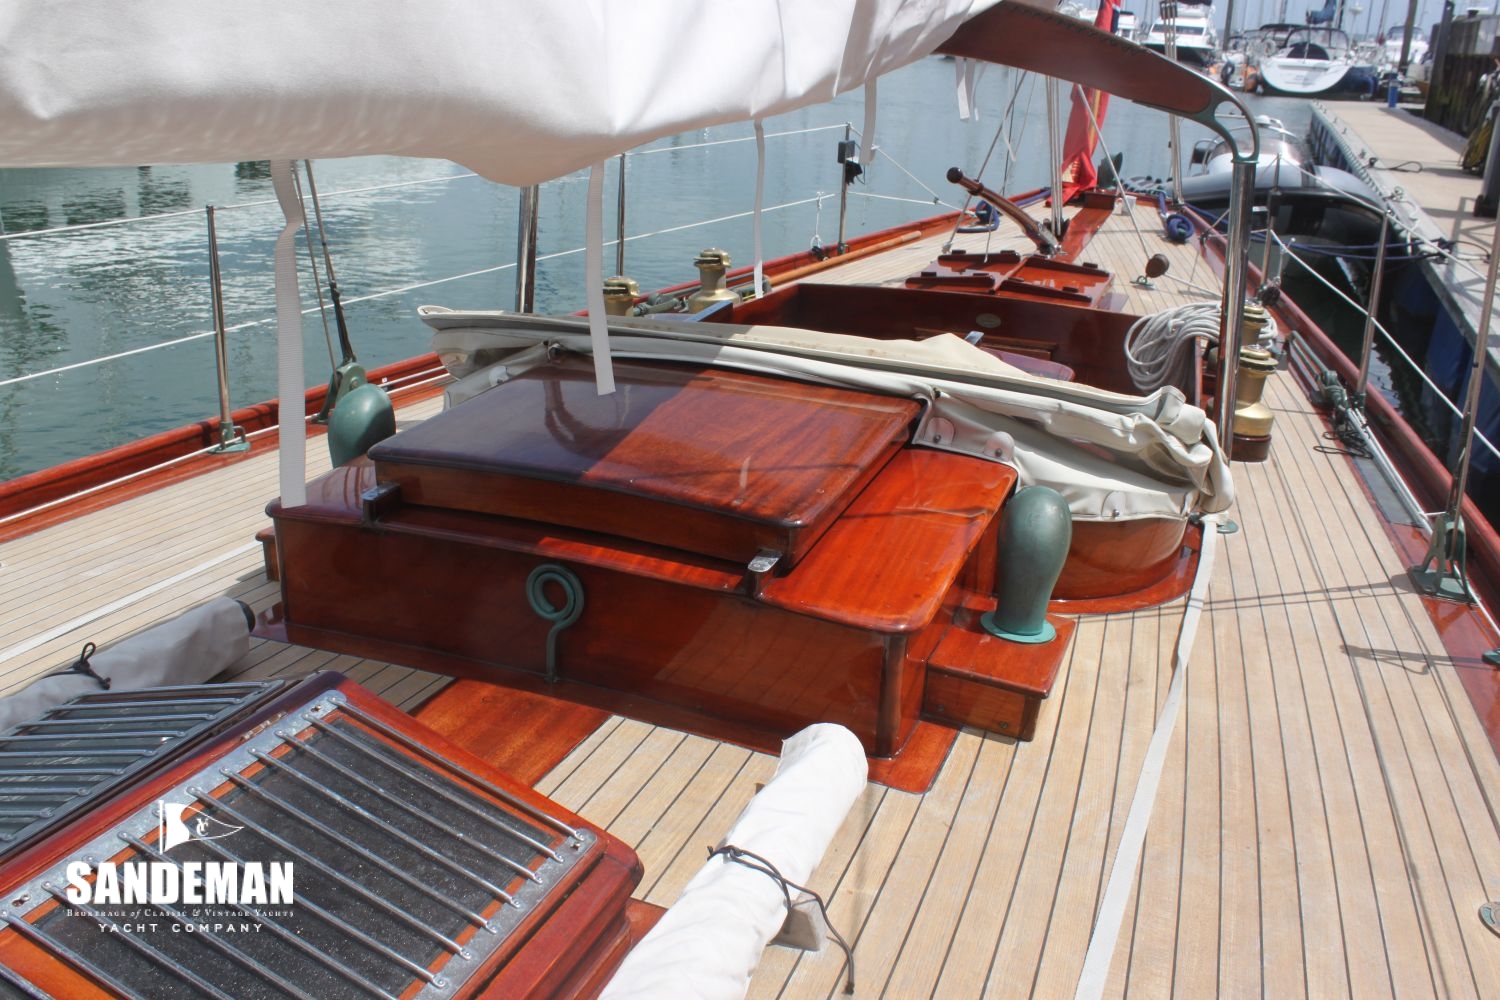 Anker 0,7 kg Klappbarer Grapnel Bootsanker für Marine Yacht Sailboat Yacht